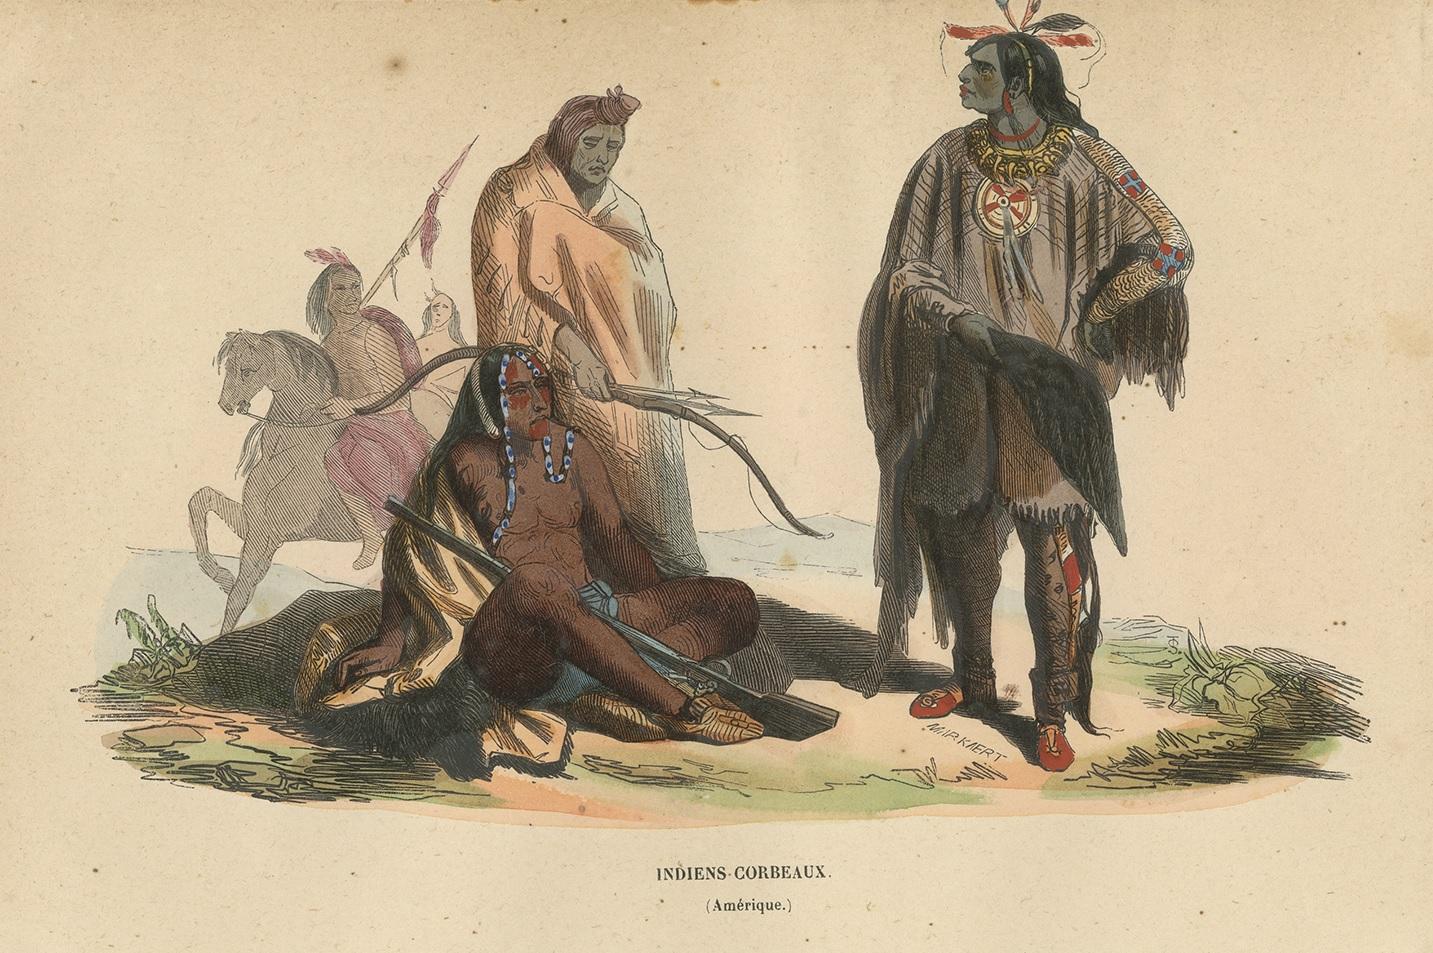 Antique costume print titled 'Indiens-Corbeaux'. Original antique print of Crow Indians. This print originates from 'Moeurs, usages et costumes de tous les peuples du monde' by Auguste Wahlen.